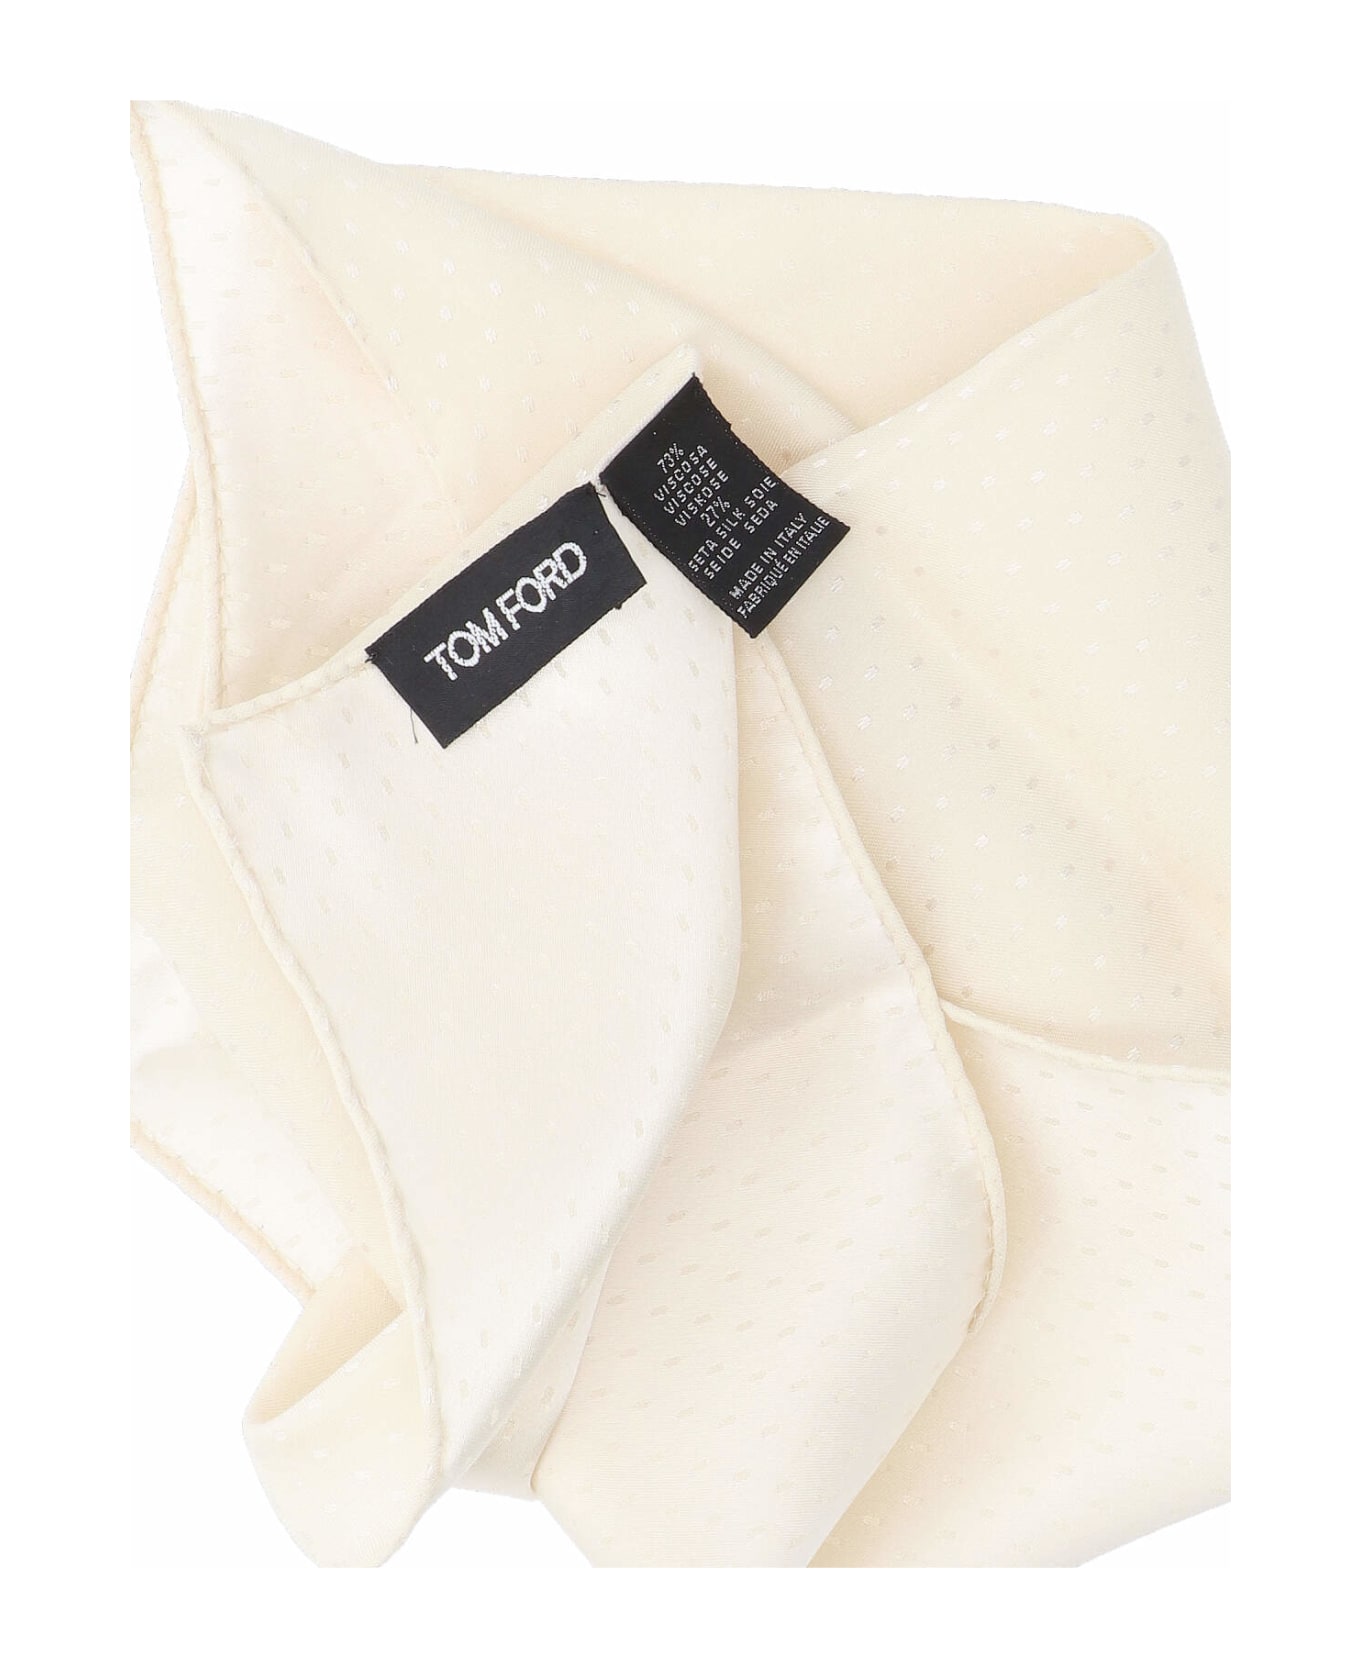 Tom Ford Pocket Clutch - Crema スカーフ